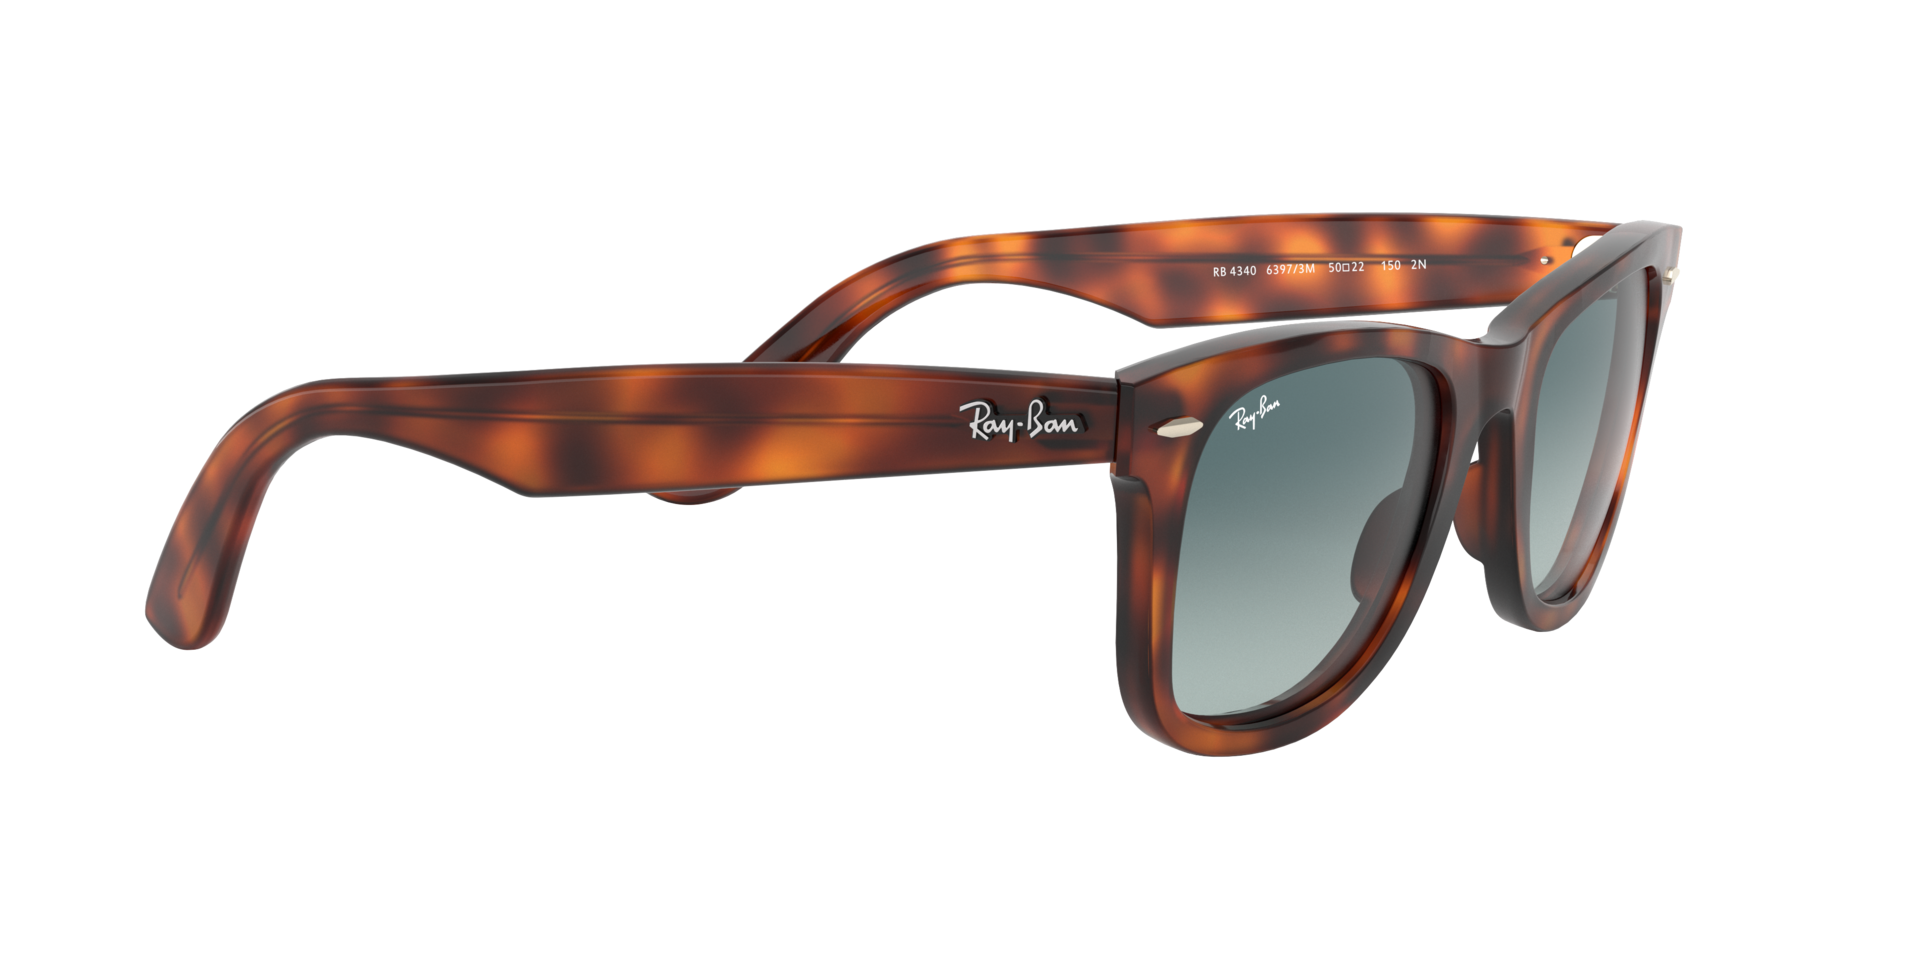 Buy Ray-Ban Wayfarer Ease Light Blue Sunglasses Online